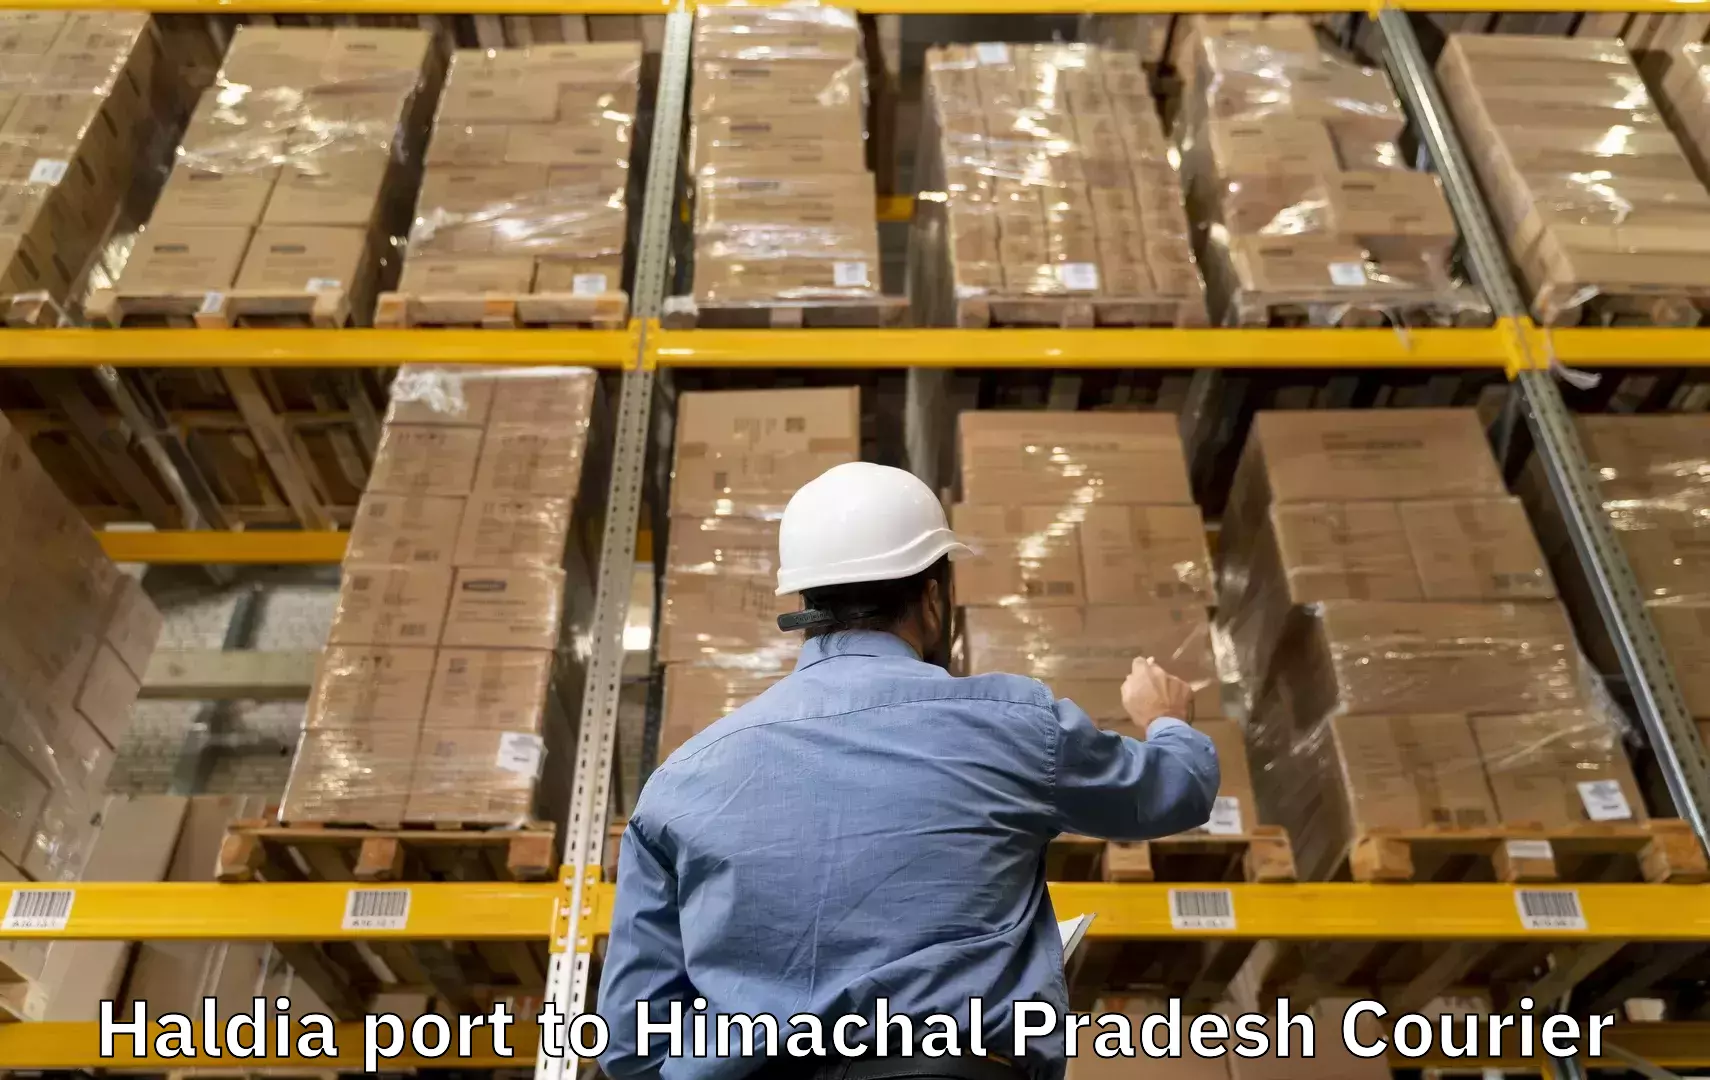 Expedited baggage courier Haldia port to Una Himachal Pradesh